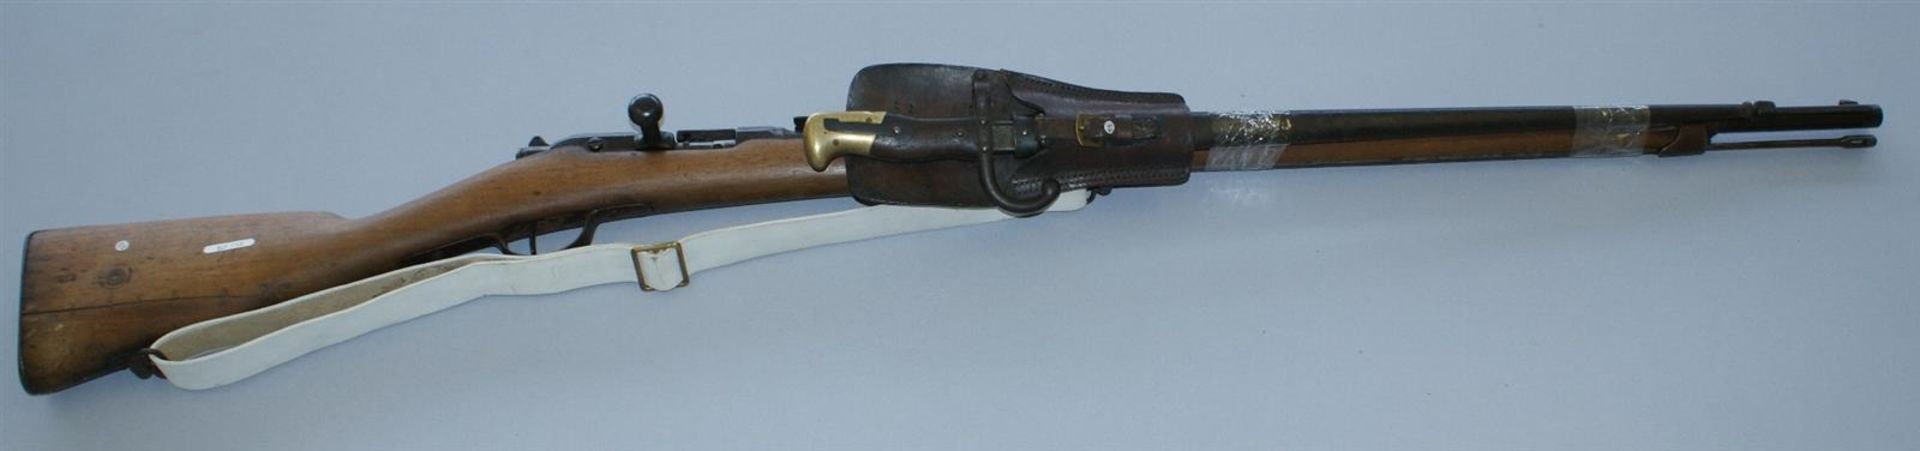 1 FUSIL d'infanterie Gras - Modèle 1874 marqué S1880 - BE - Manufacture d'Armes de [...]